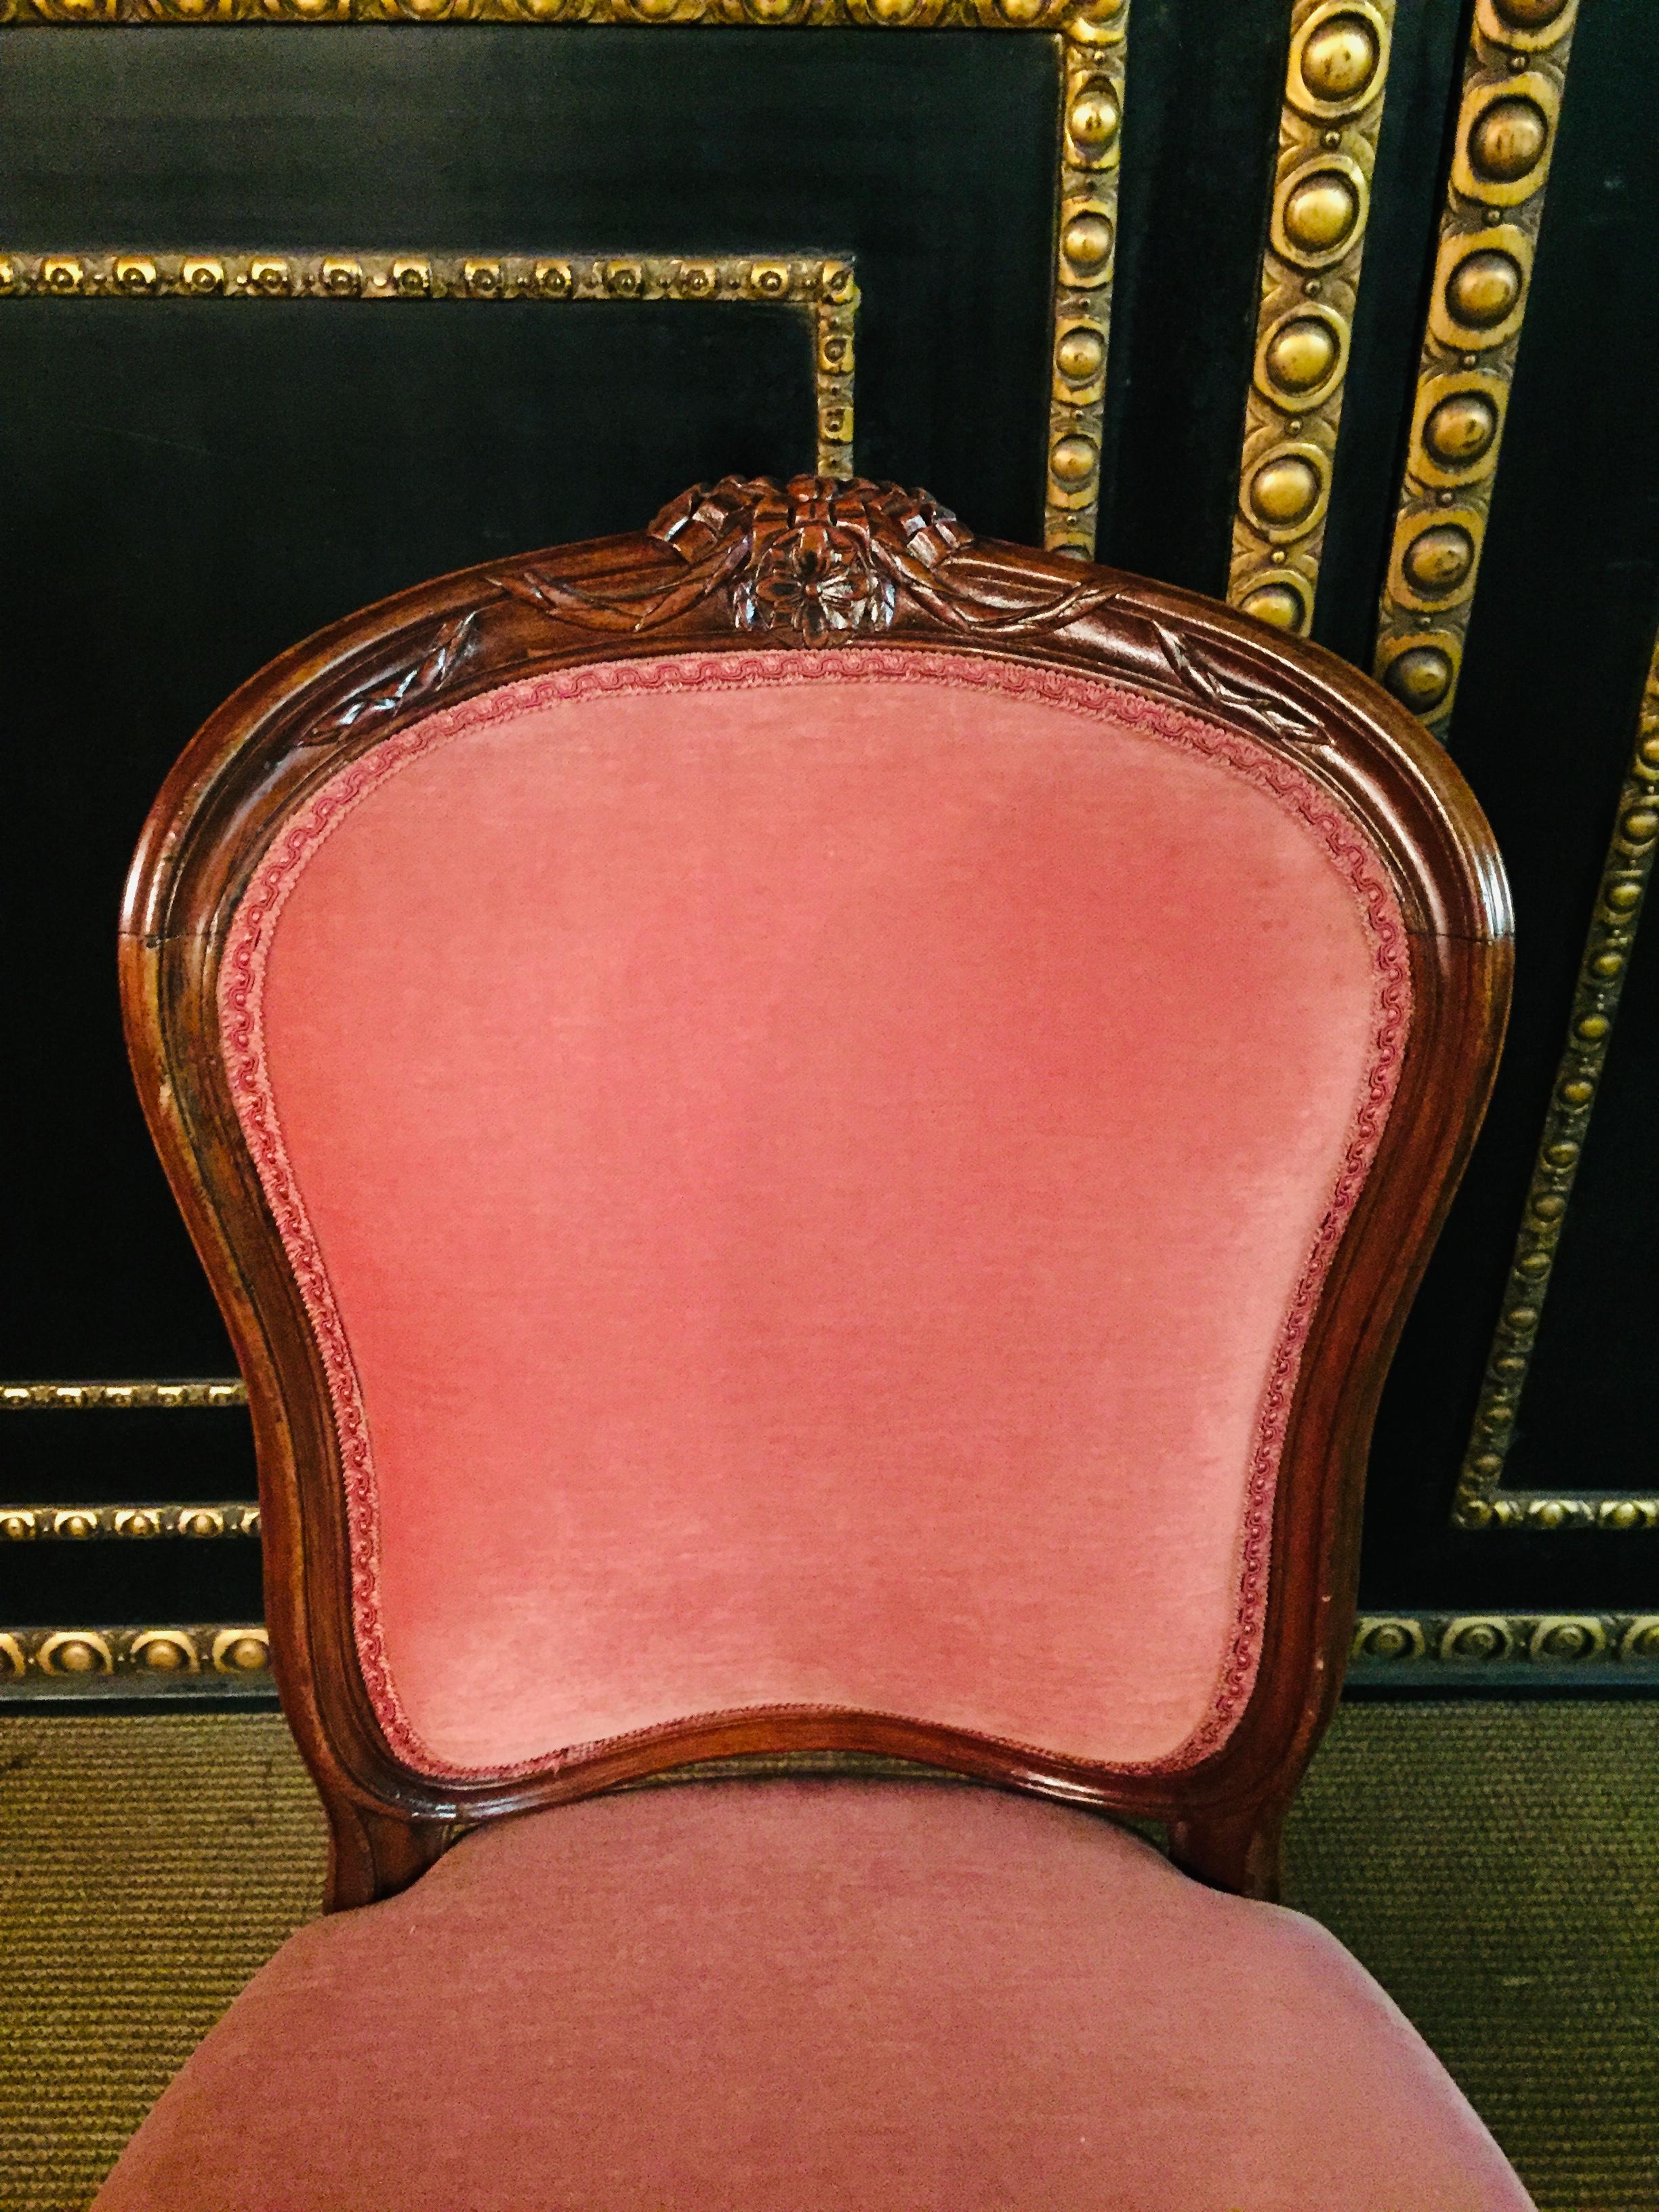 Walnut Four Louis Seize Chairs, circa 1850-1880